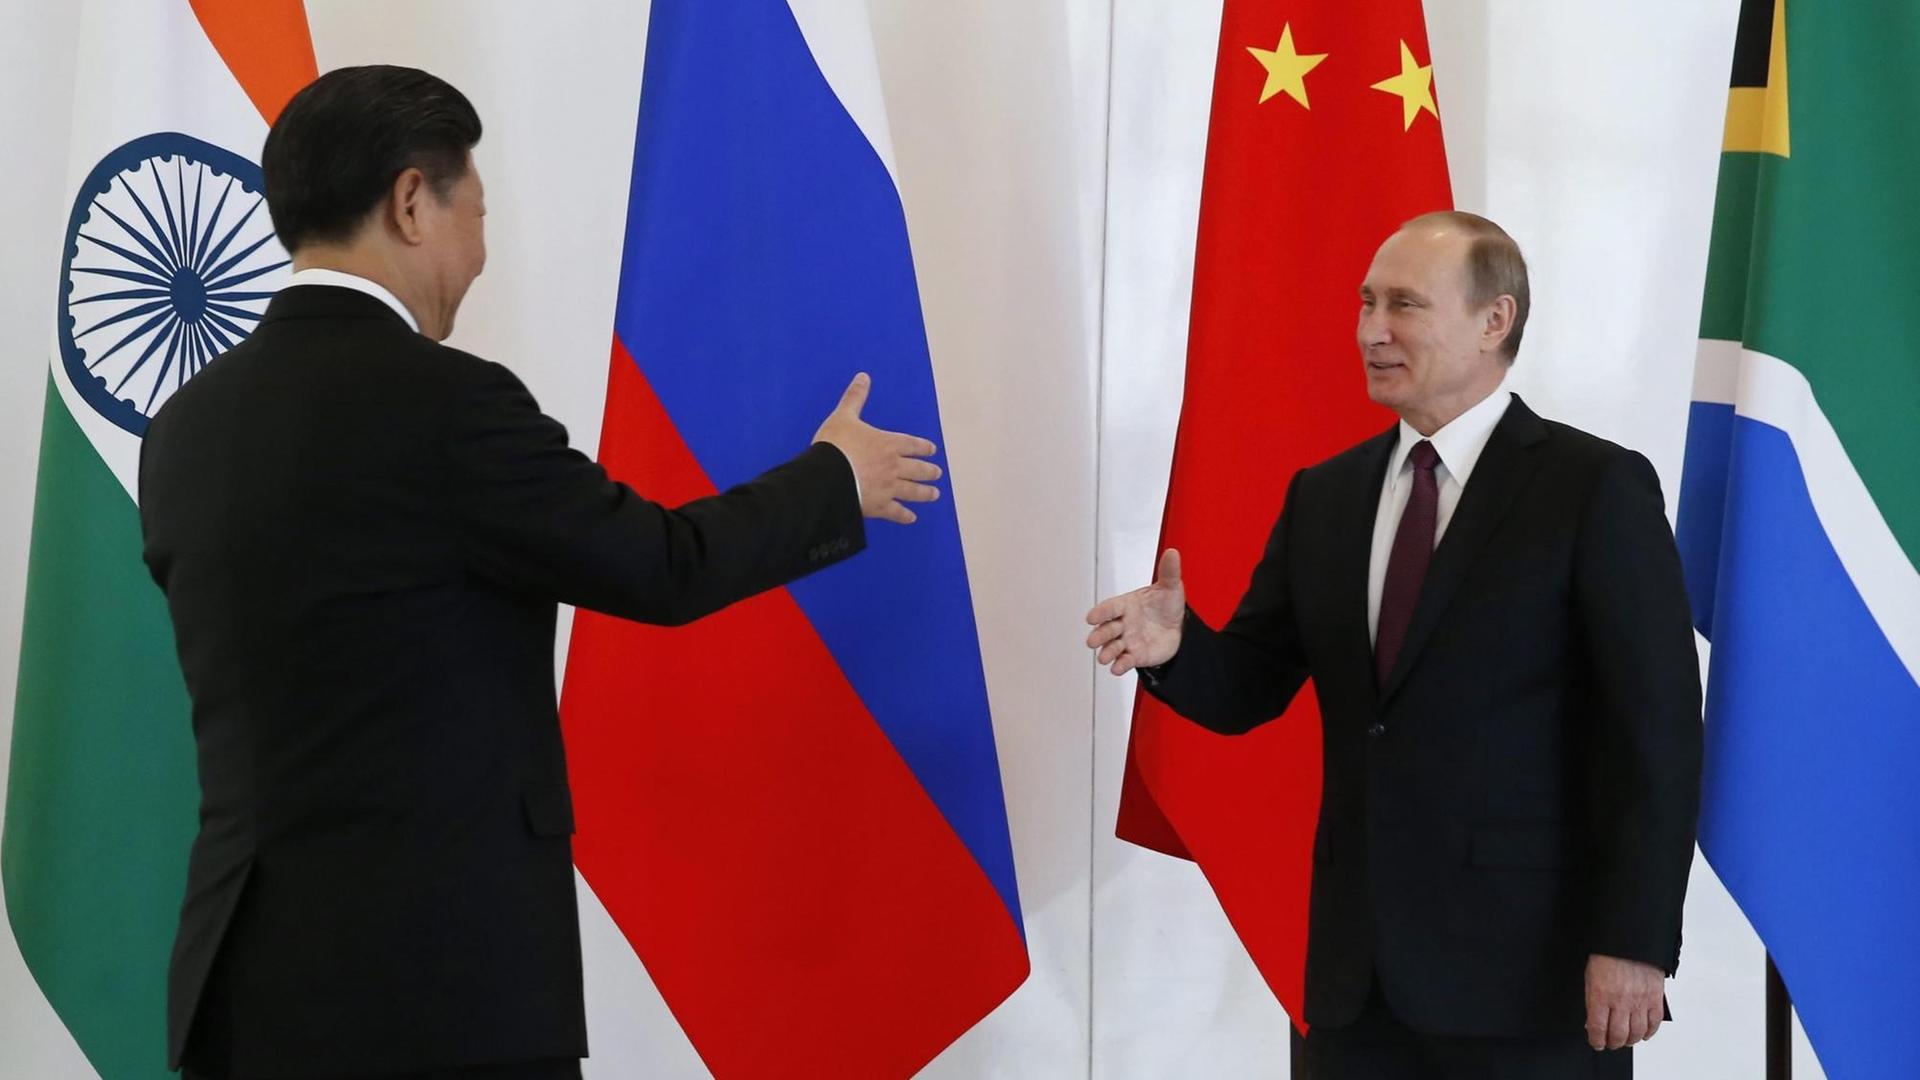 Der russische Präsident Wladimir Putin und der chinesische Präsident Xi Jinping begrüßen sich auf dem Treffen der BRICS-Staaten vor dem G20-Gipfel in Antalya.